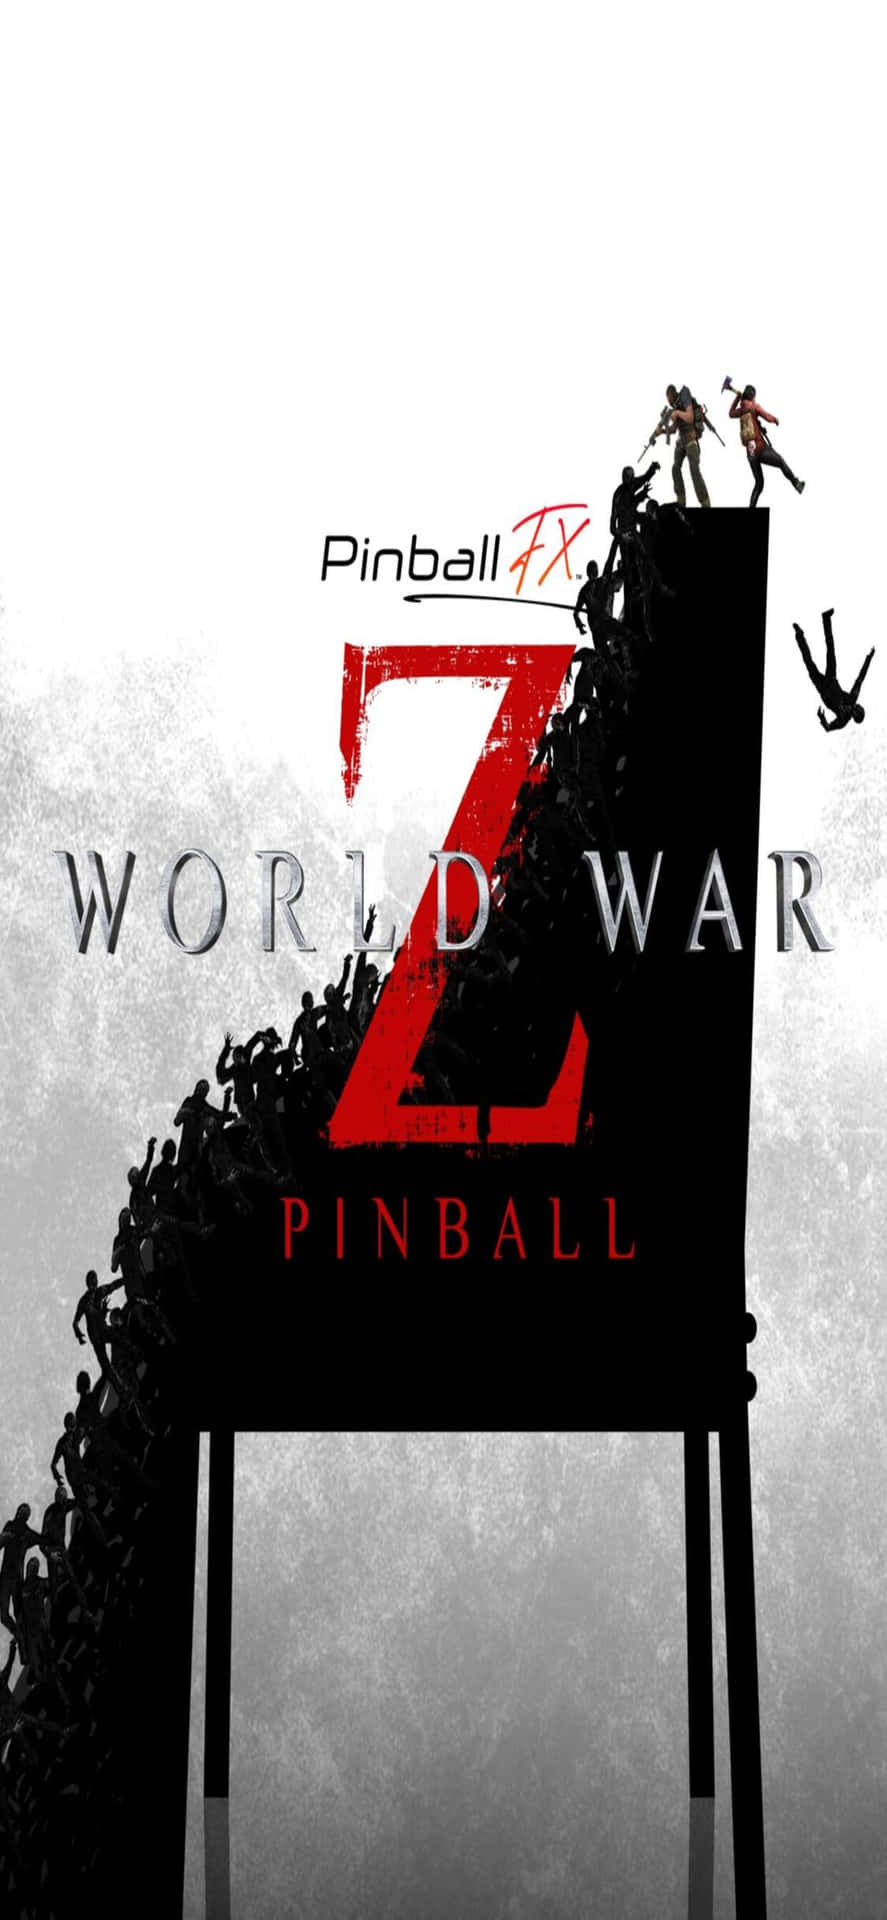 Pósterde Pinball Fx Para Iphone Xs Max Fondo De World War Z